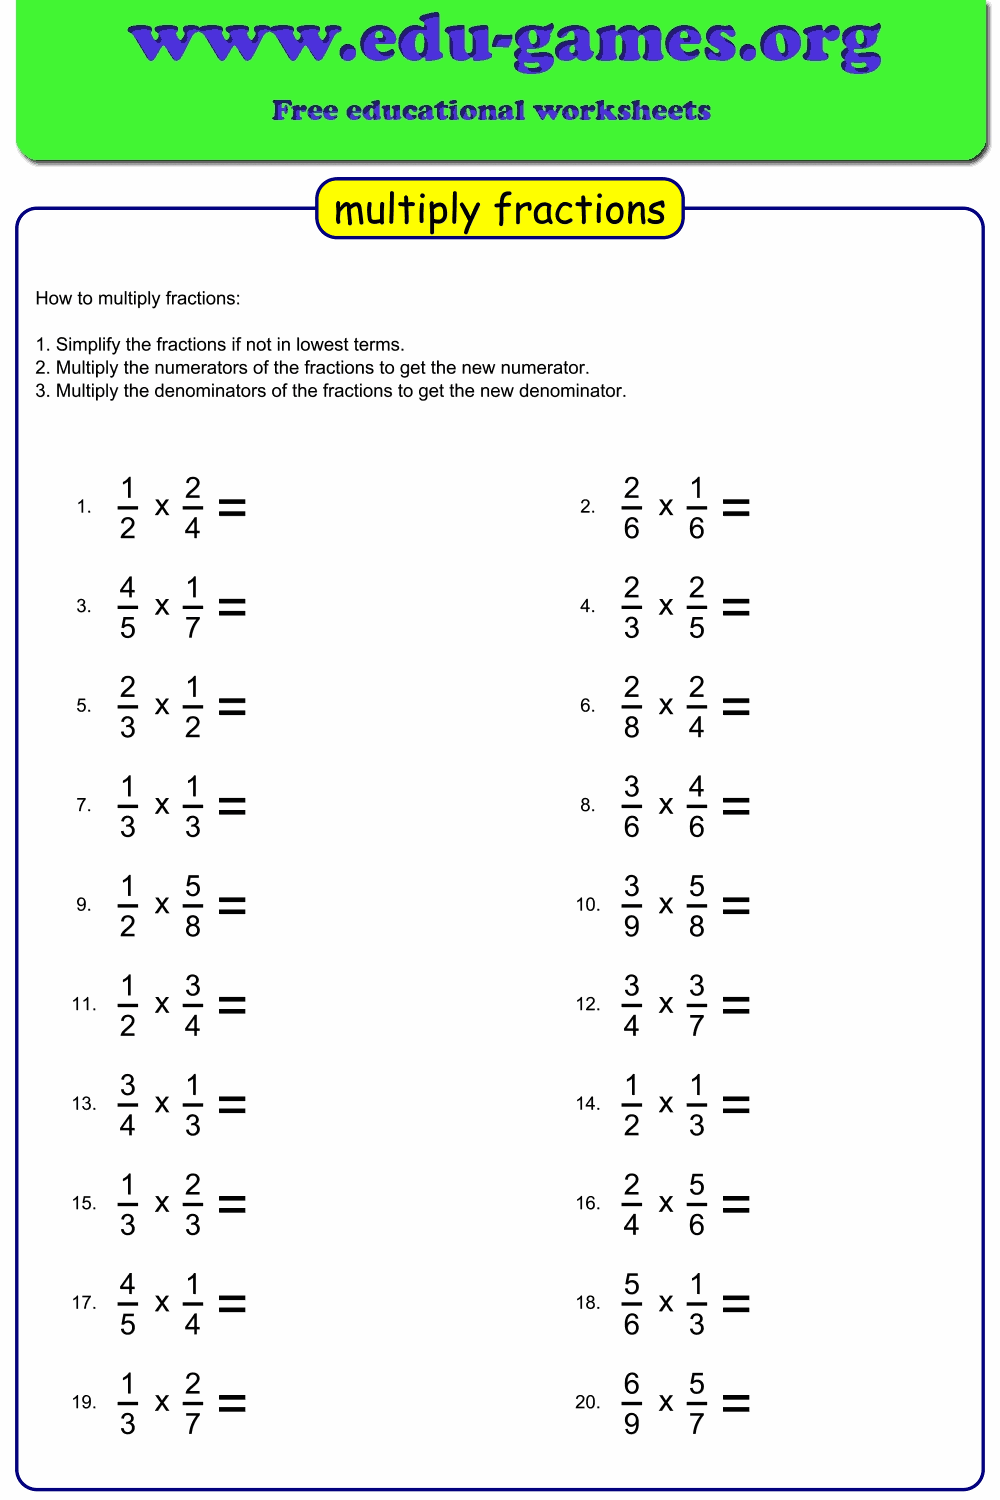 Free Multiply Fraction Worksheet Maker Fractions Worksheets Math 